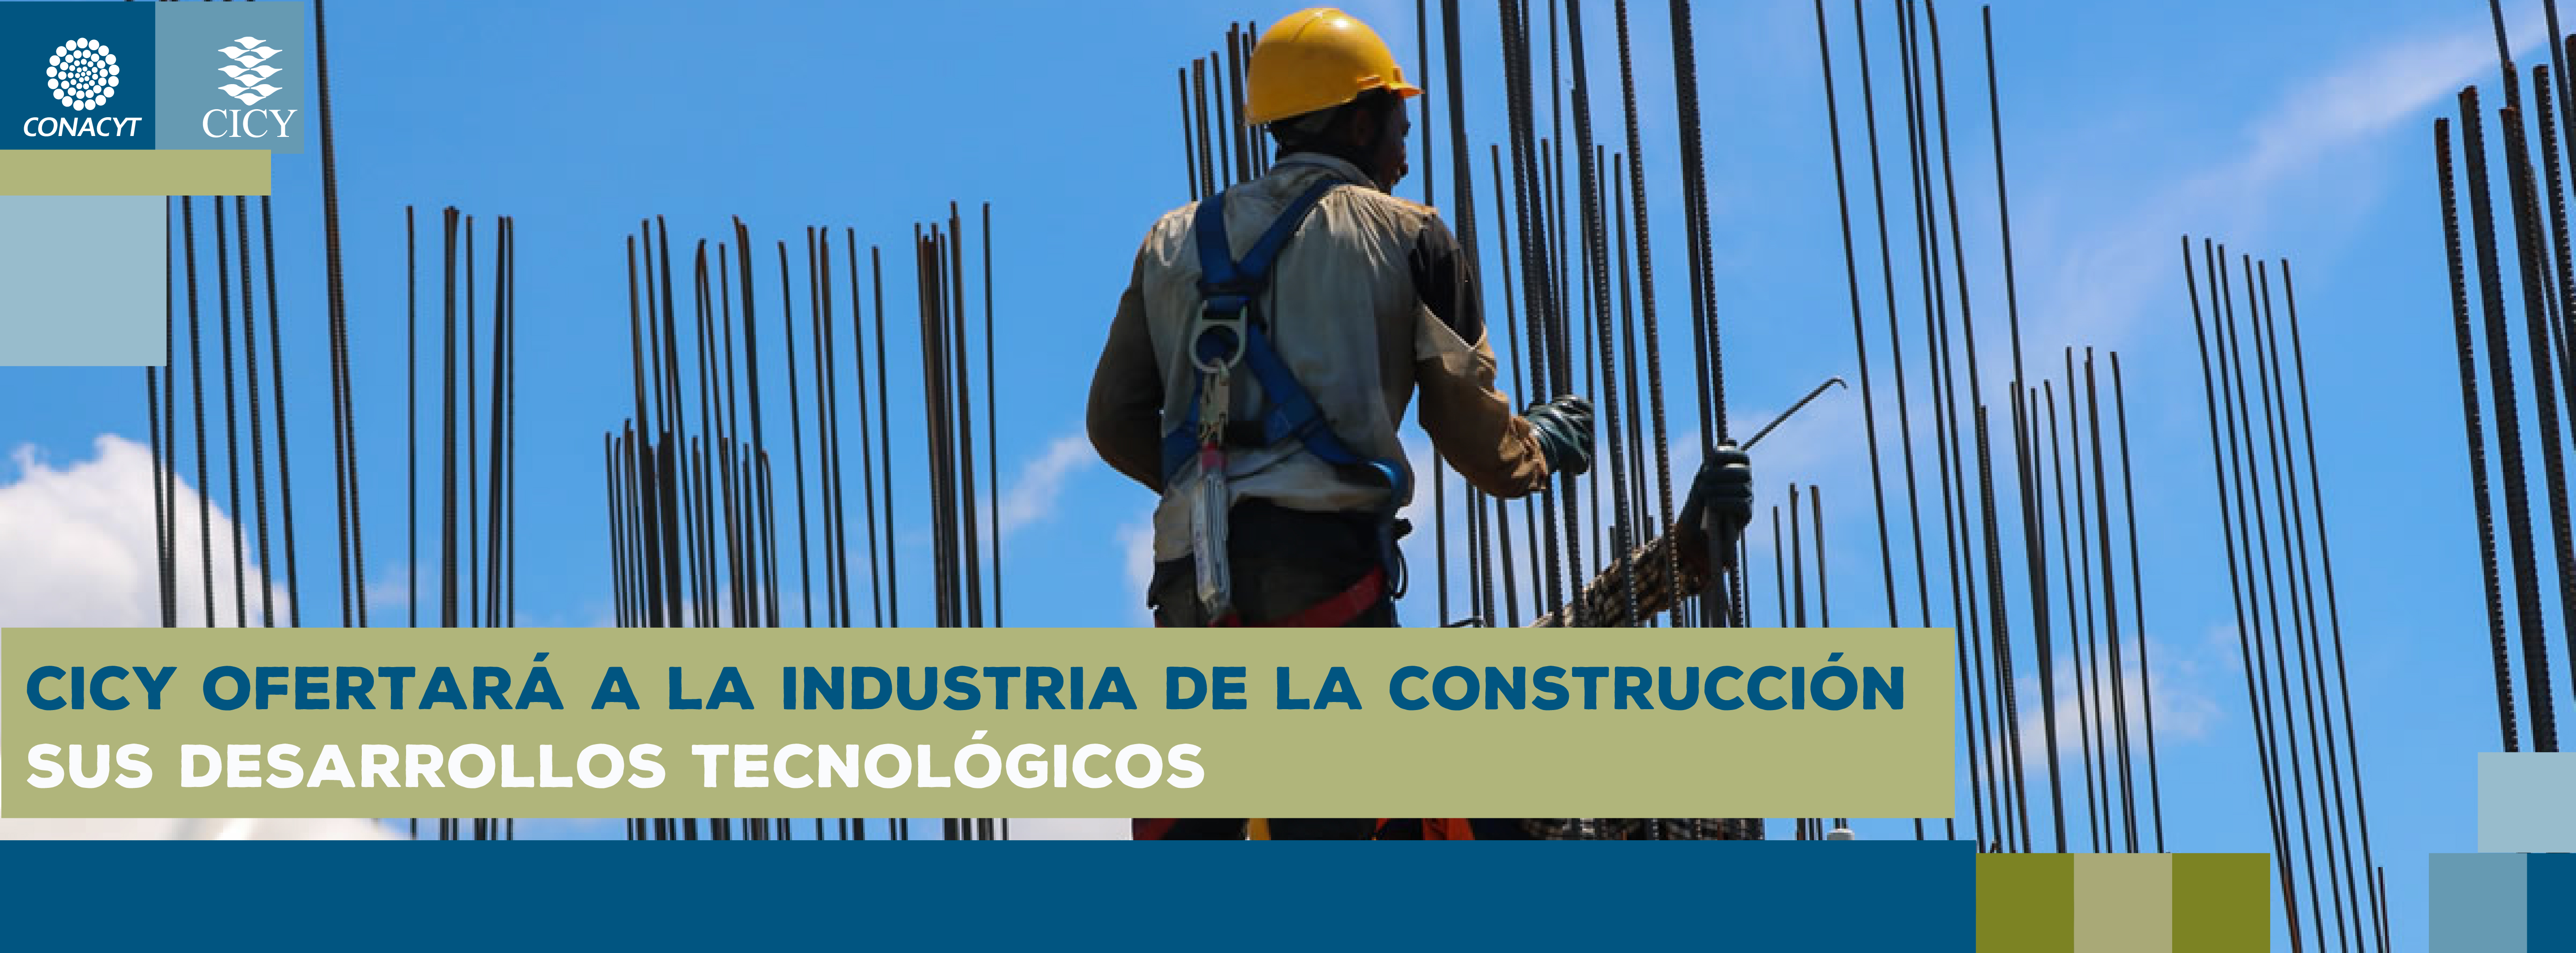 CICY ofertará a la industria de la construcción sus desarrollos tecnológicos